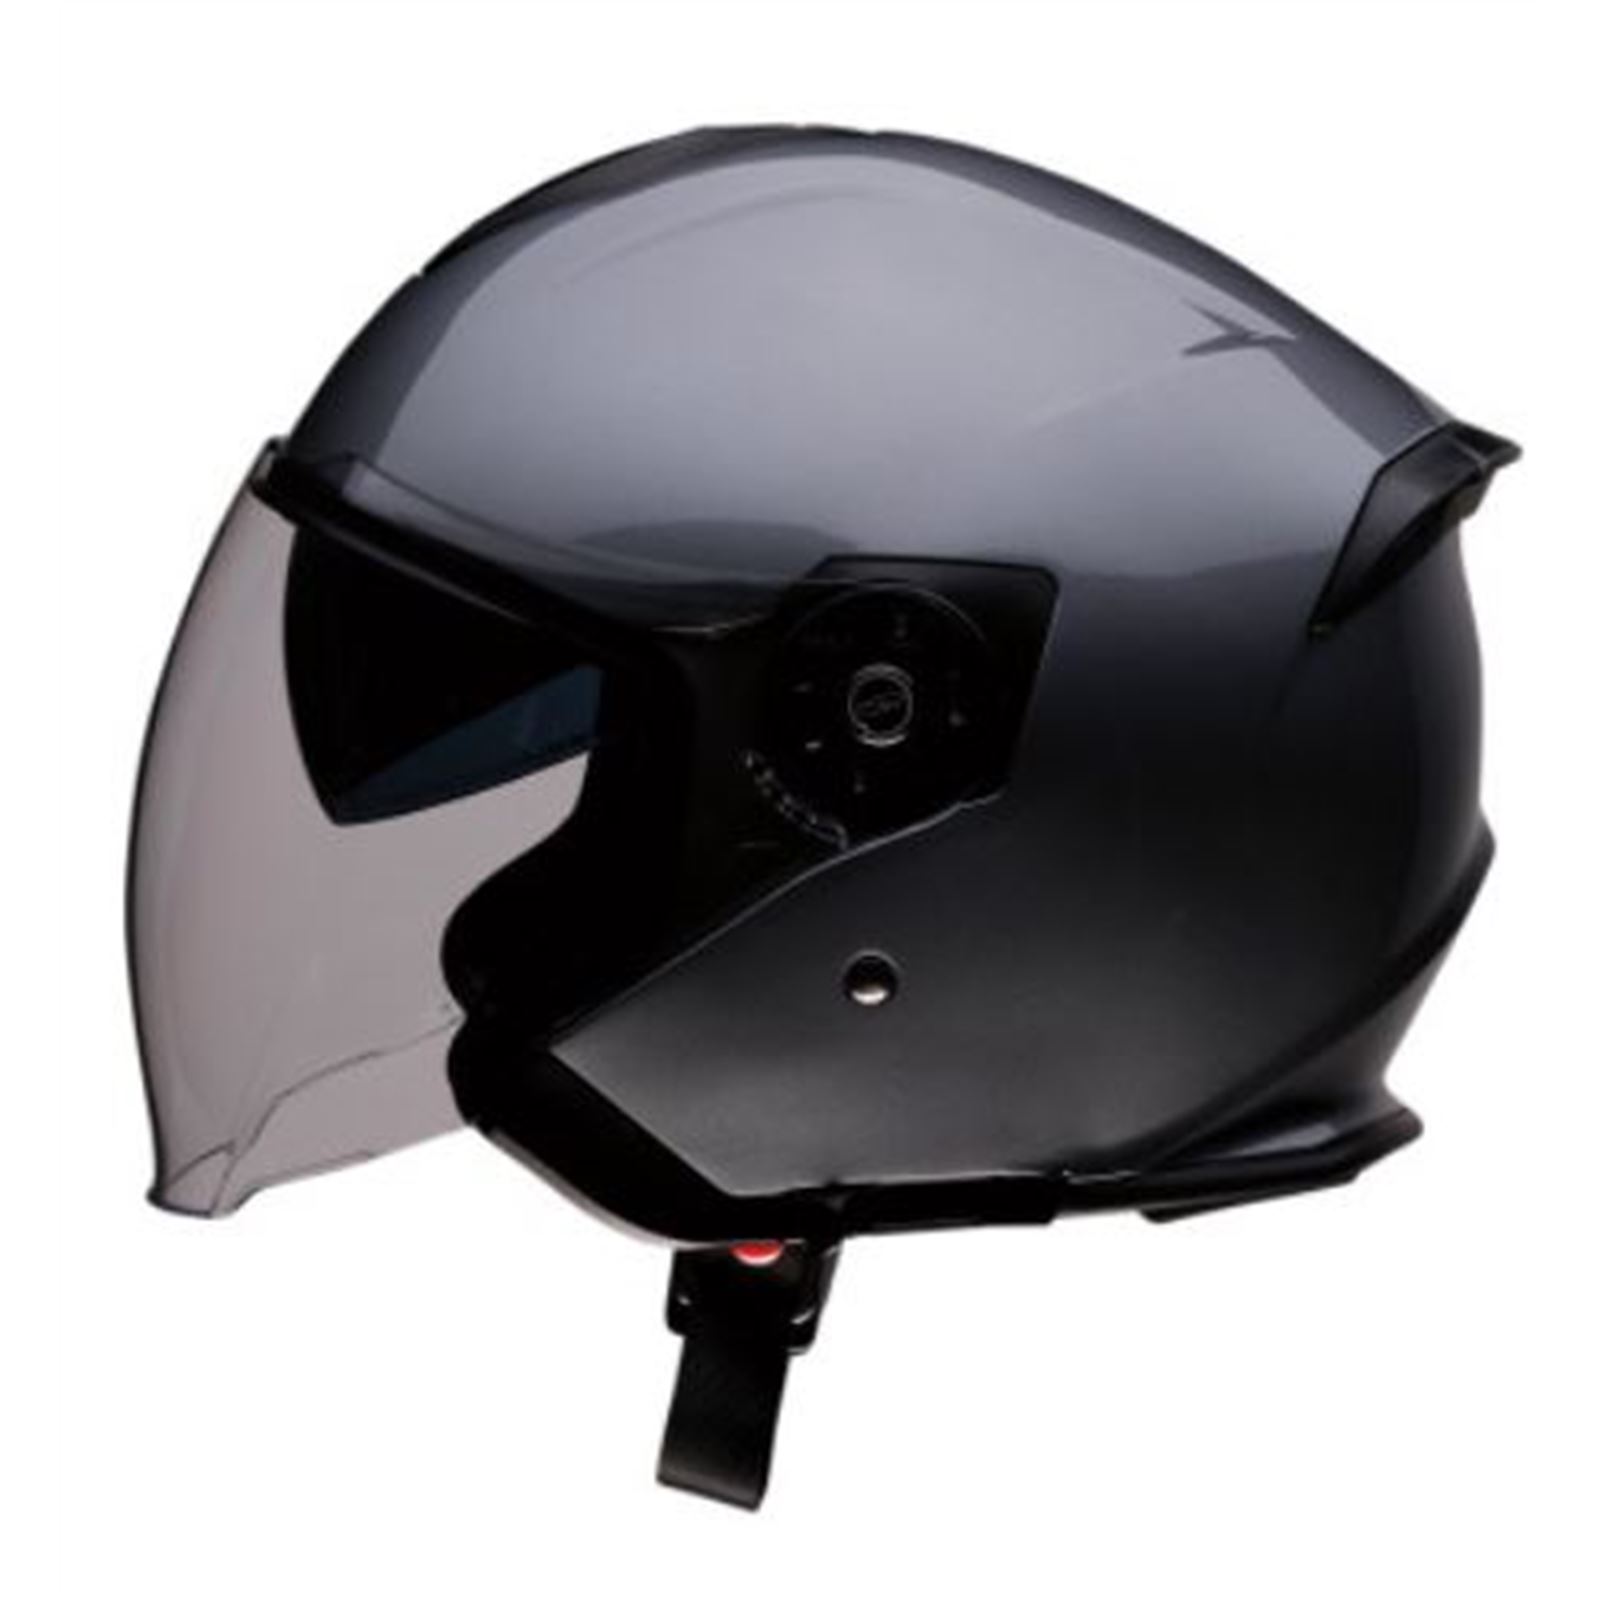 Z1R Road Maxx Helmet - Dark Silver - Medium